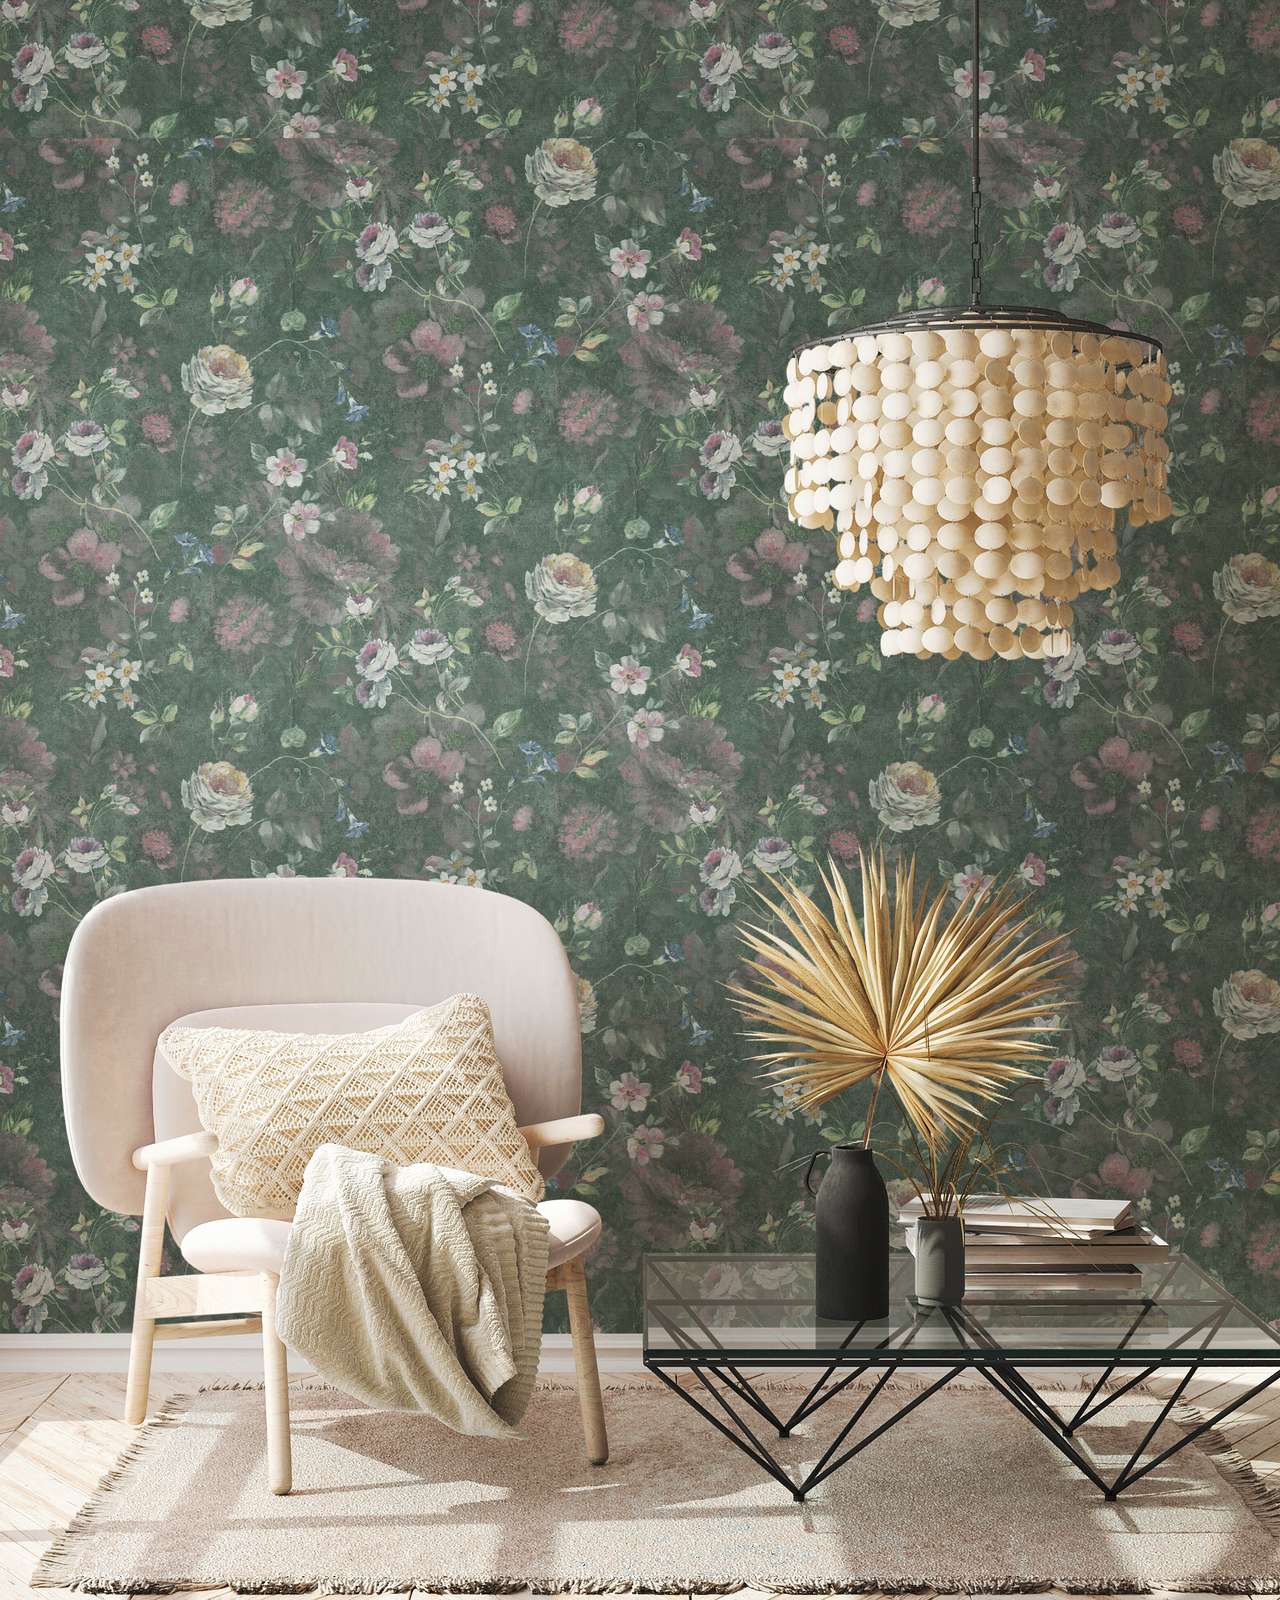             Papel pintado no tejido con motivos florales pintados Sin PVC - verde, blanco, rosa
        